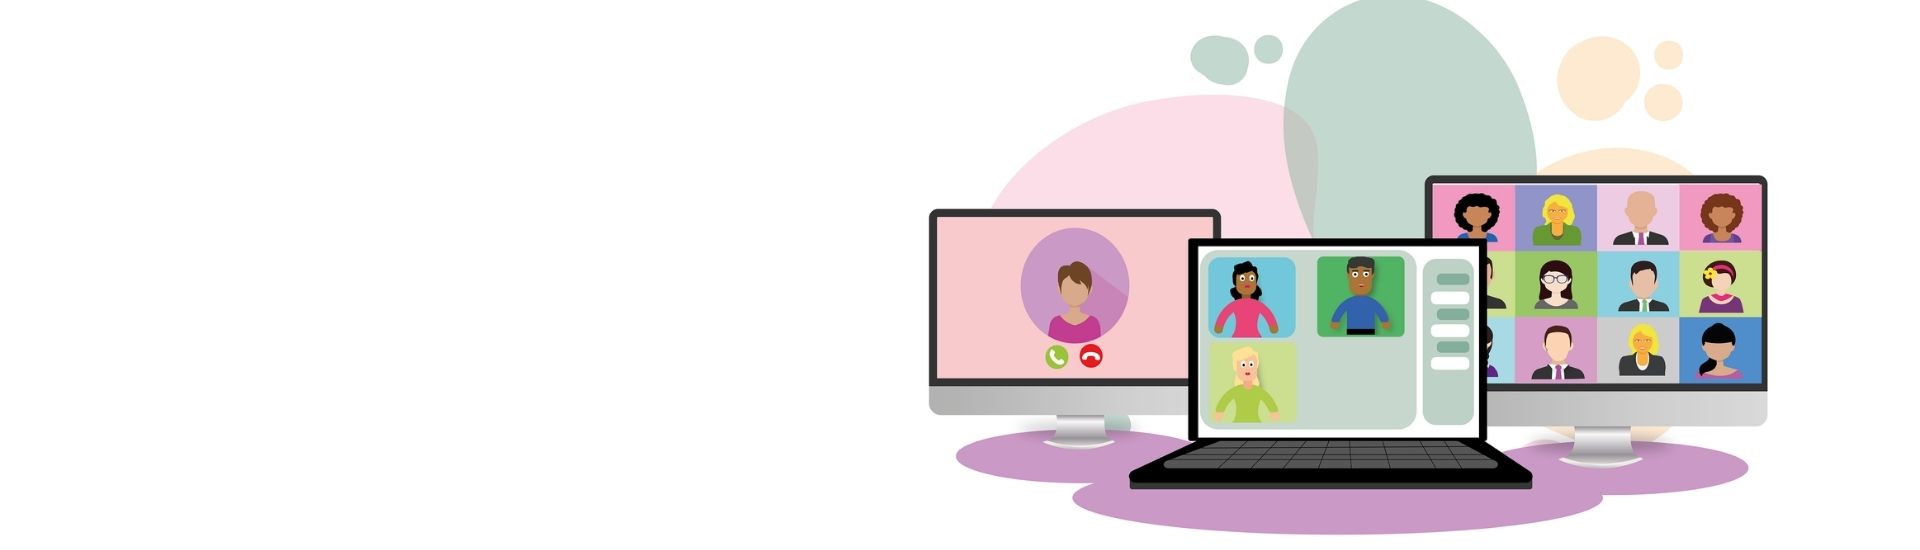 Imagen de Pixabay donde se ven varios profesores conectados en 3 pantallas distintas